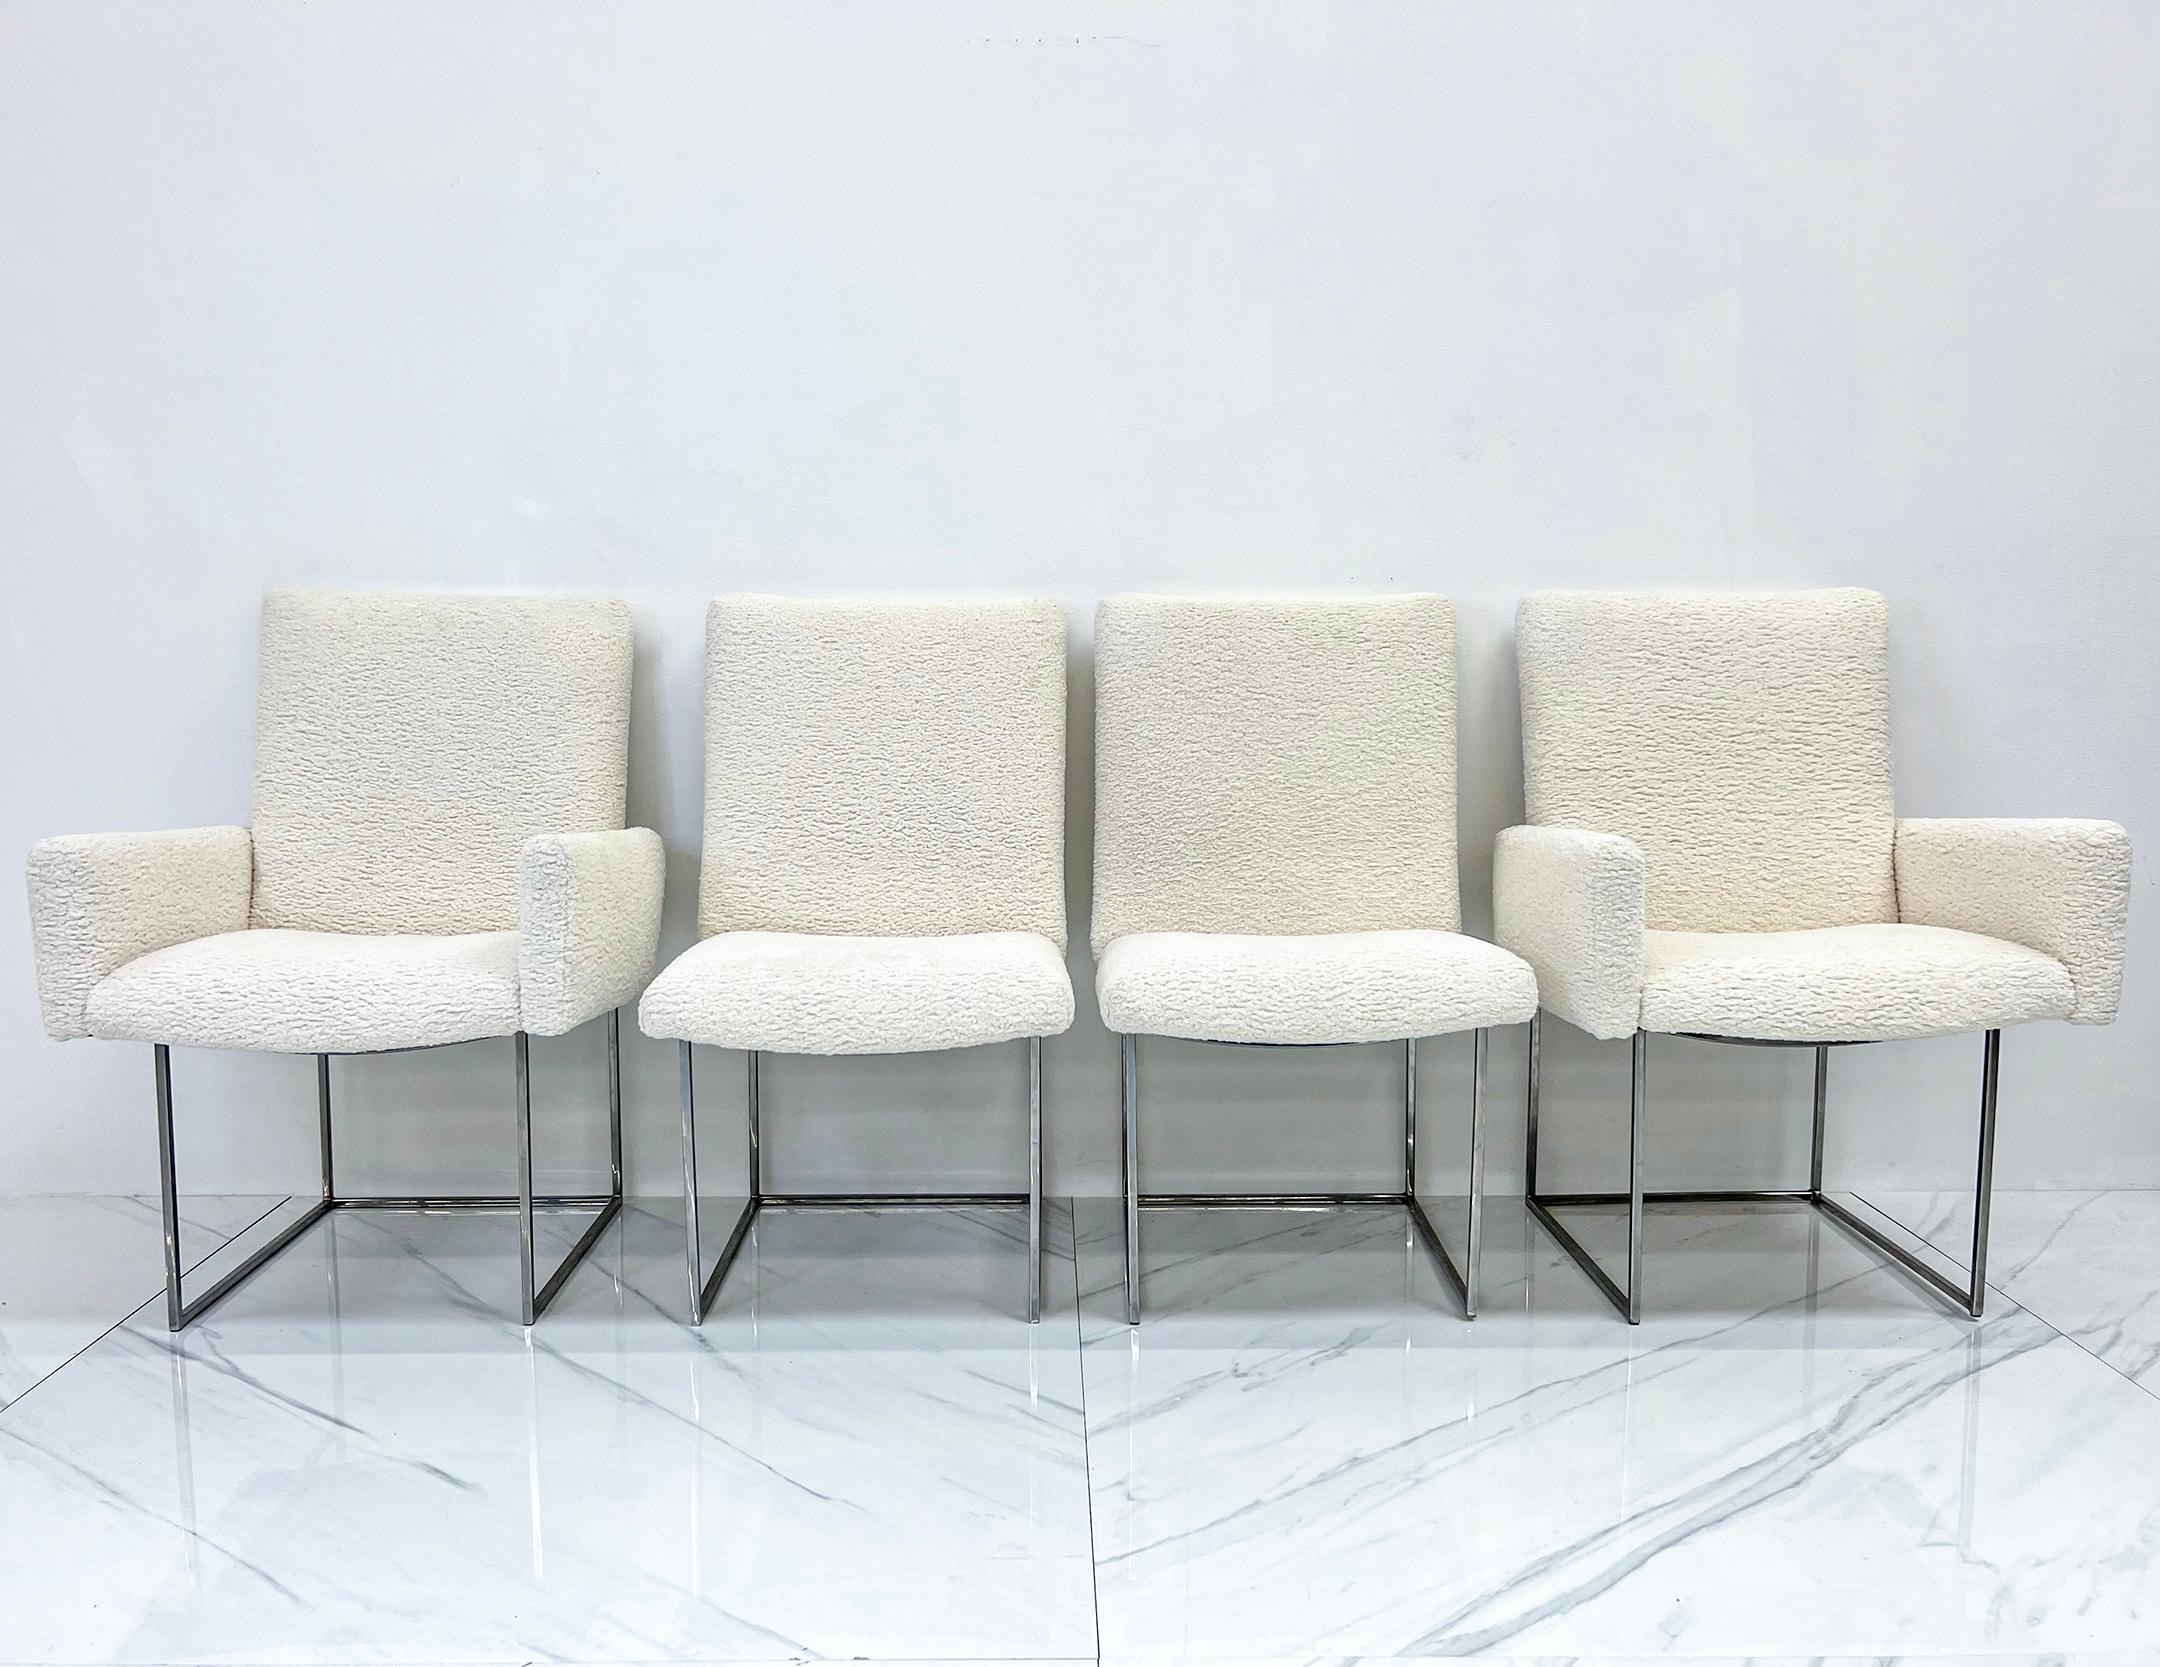 Diese Stühle sind umwerfend! Die Thin Line Esszimmerstühle von Milo Baughman, die ursprünglich in den 1950er Jahren eingeführt wurden, sind ein klassisches modernes Design aus der Mitte des Jahrhunderts, das für seine schlichte und minimalistische